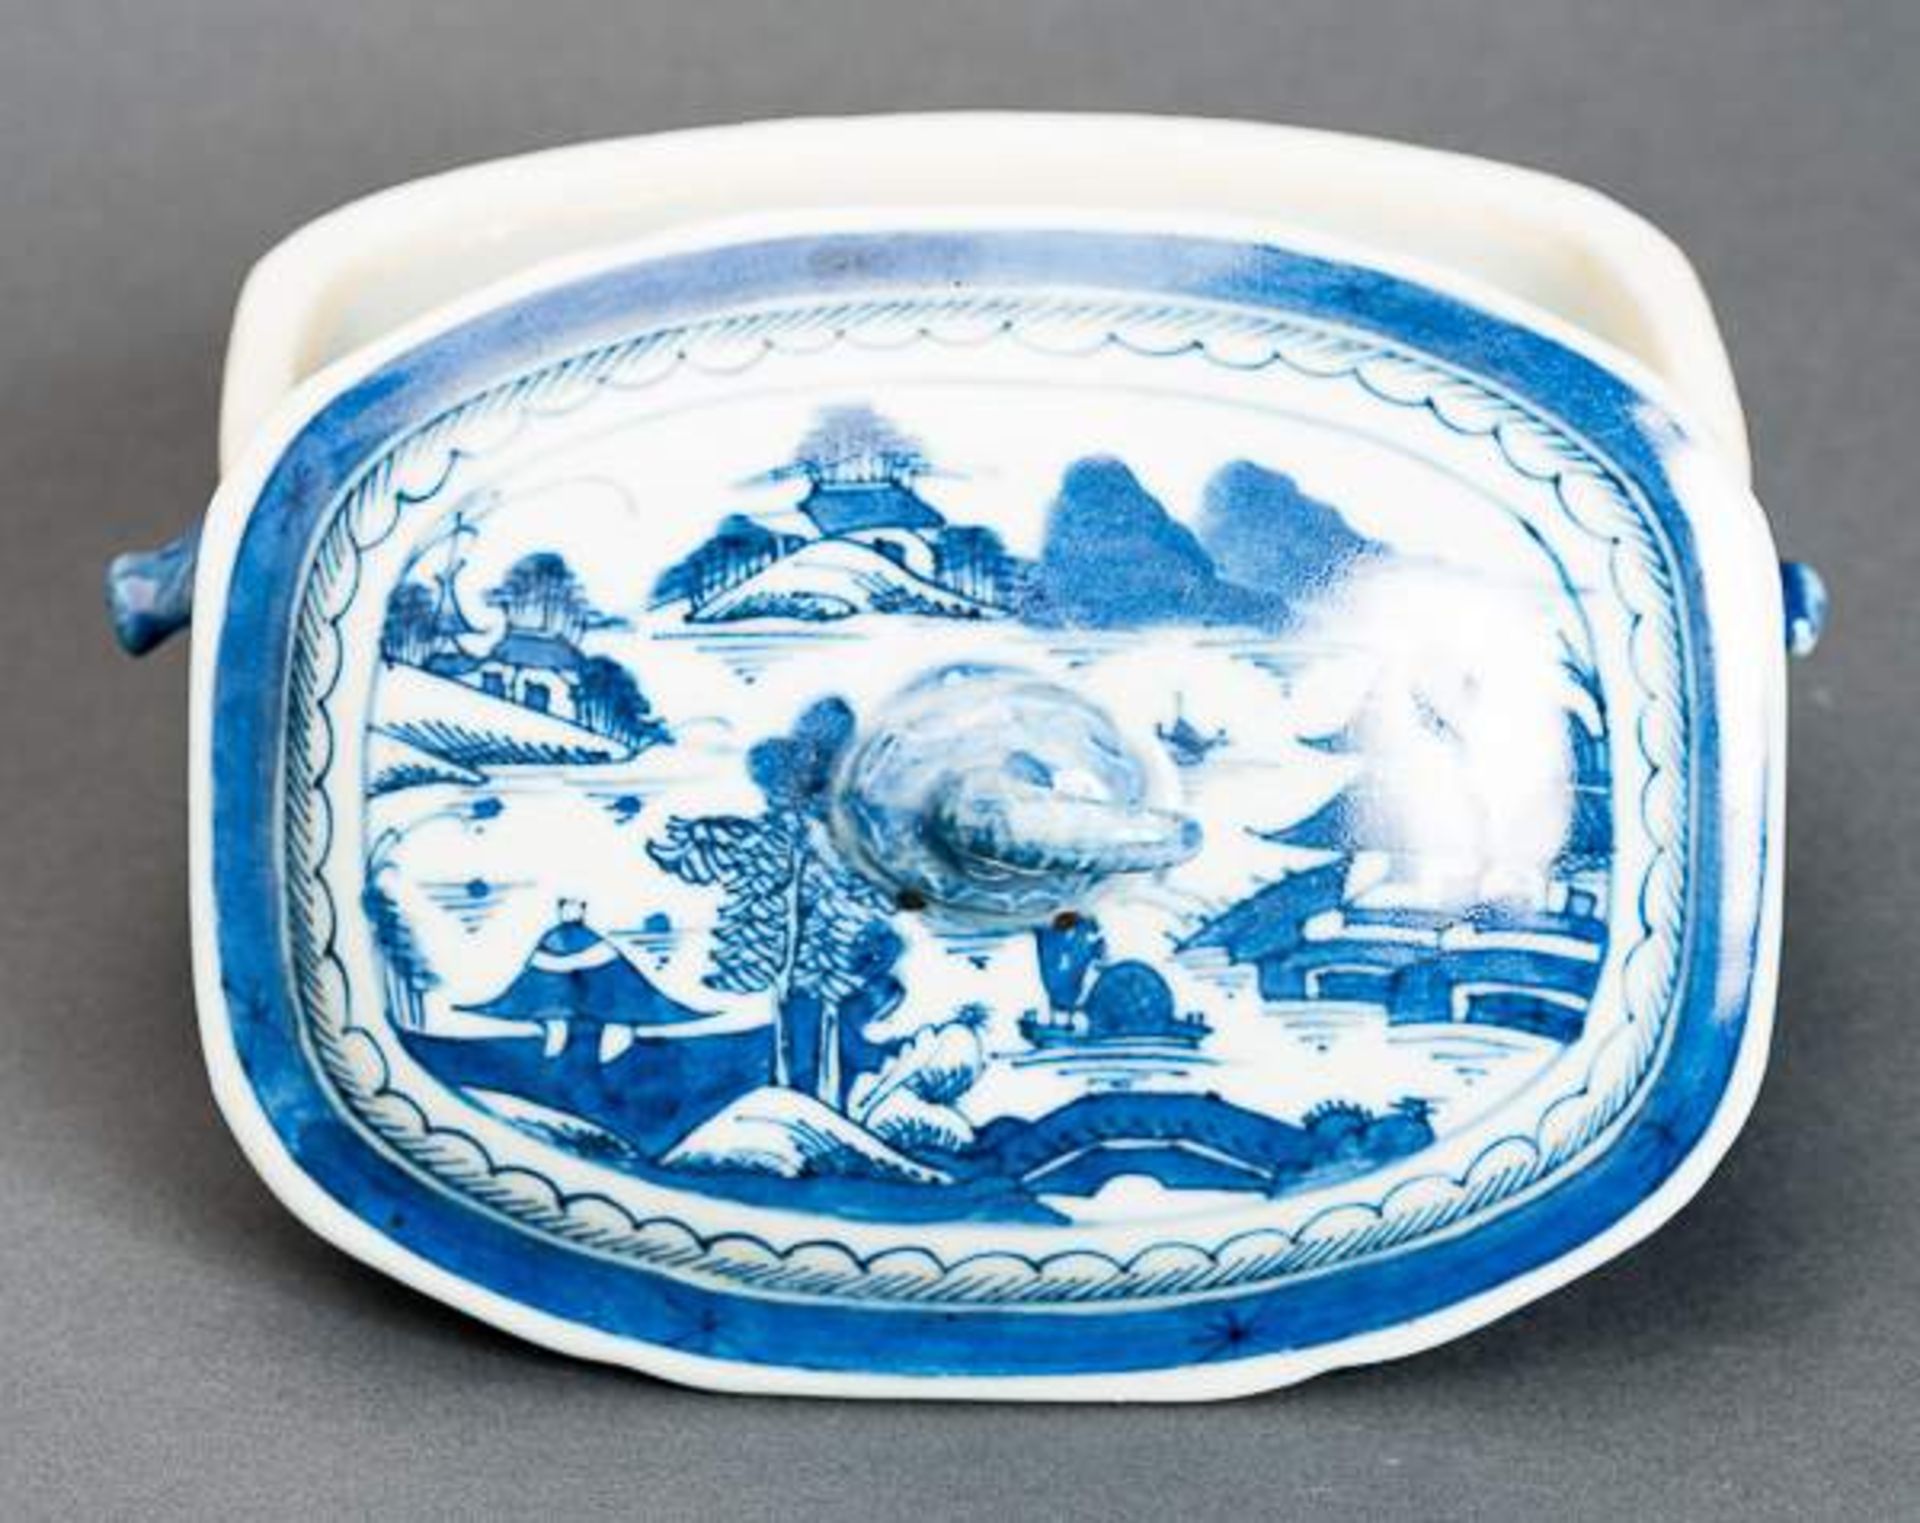 DECKELSCHALE Blauweiß-Porzellan. China, Qing-Dynastie, 19. Jh. Diese sehr ansprechende oval- - Image 3 of 11